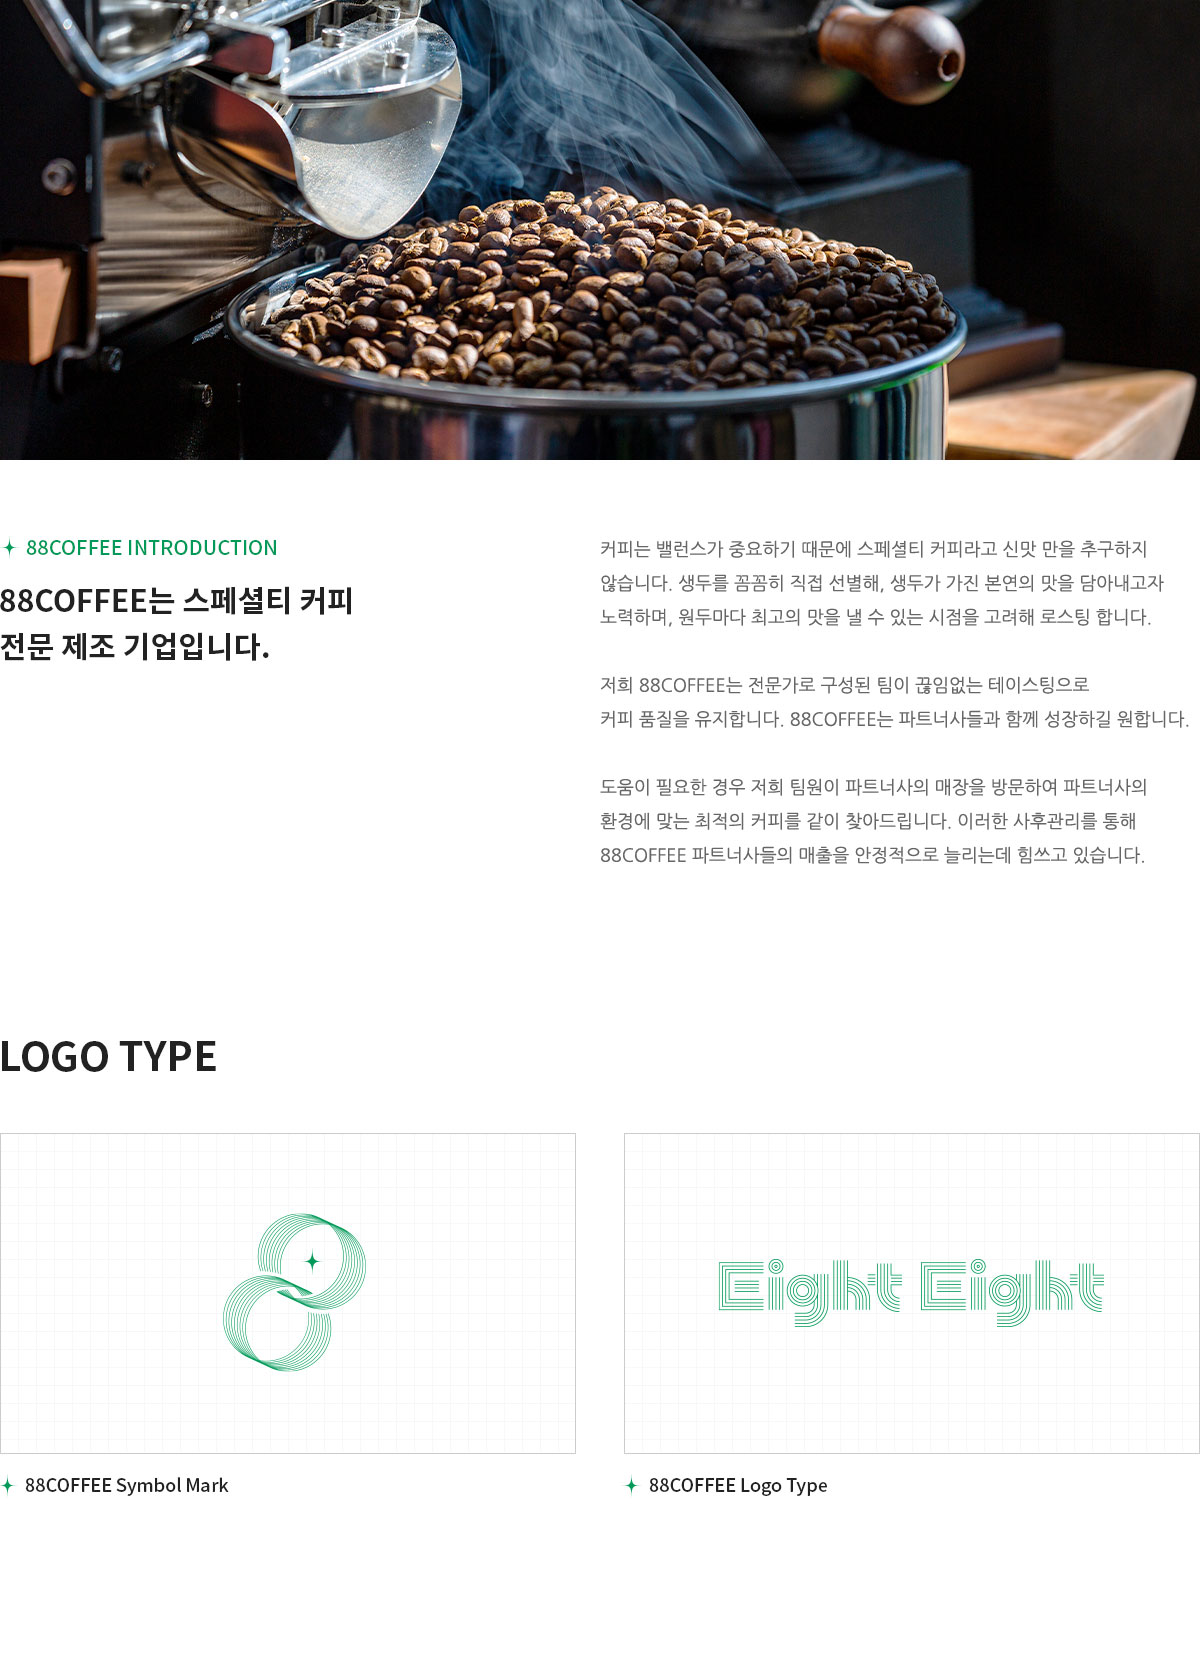 88COFFEE는 스페셜티 커피 전문 제조 기업입니다.